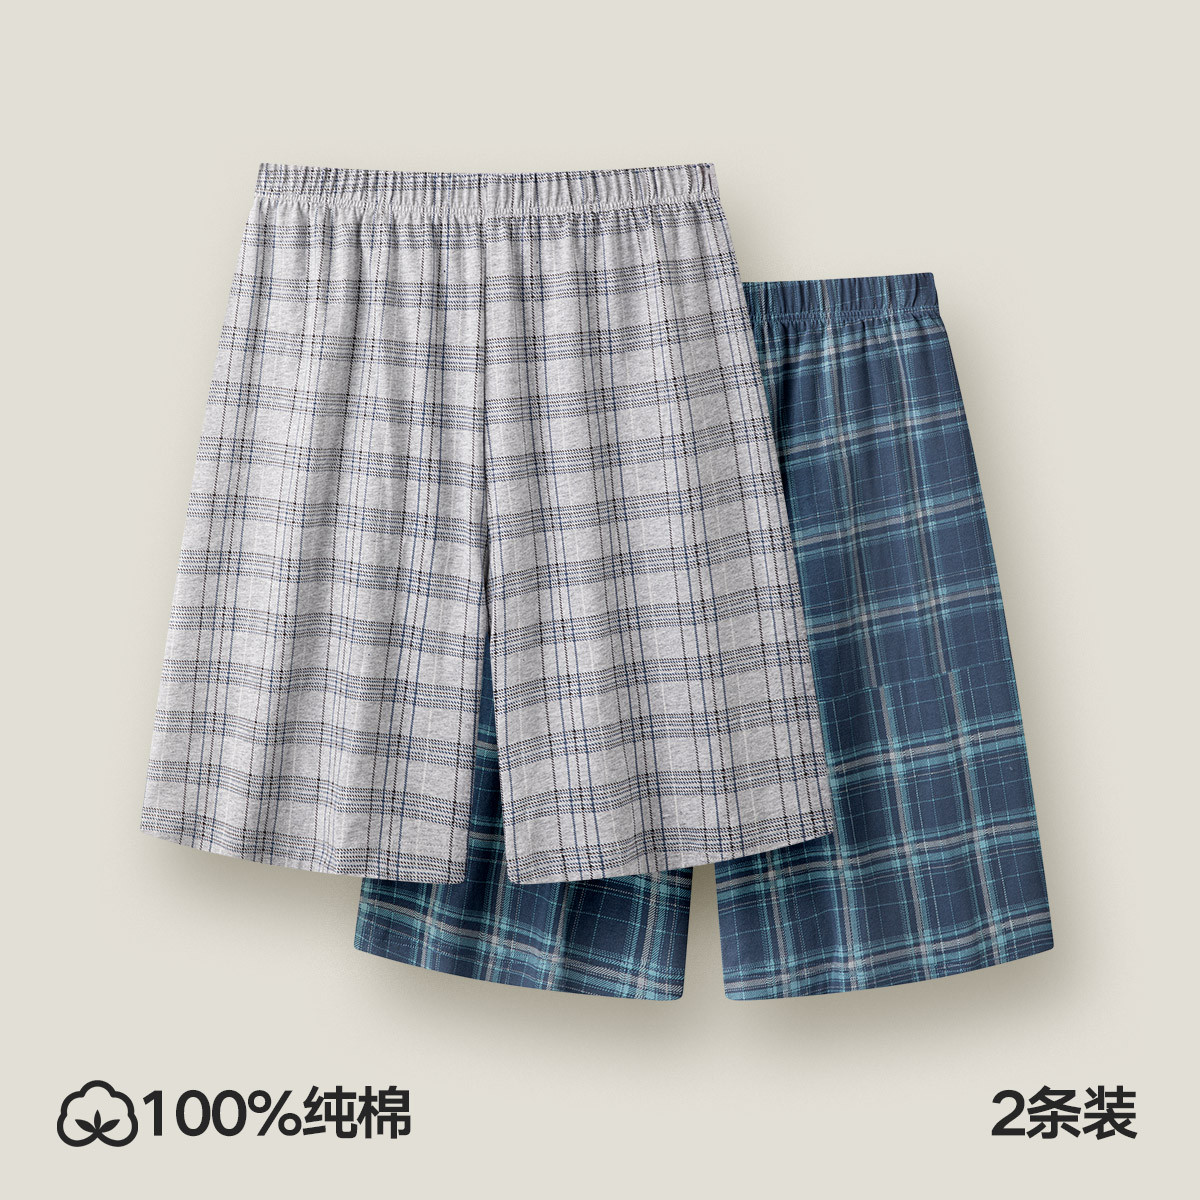 【100%棉】2条装男士家居裤男透气舒适宽松男士格纹短裤纯棉